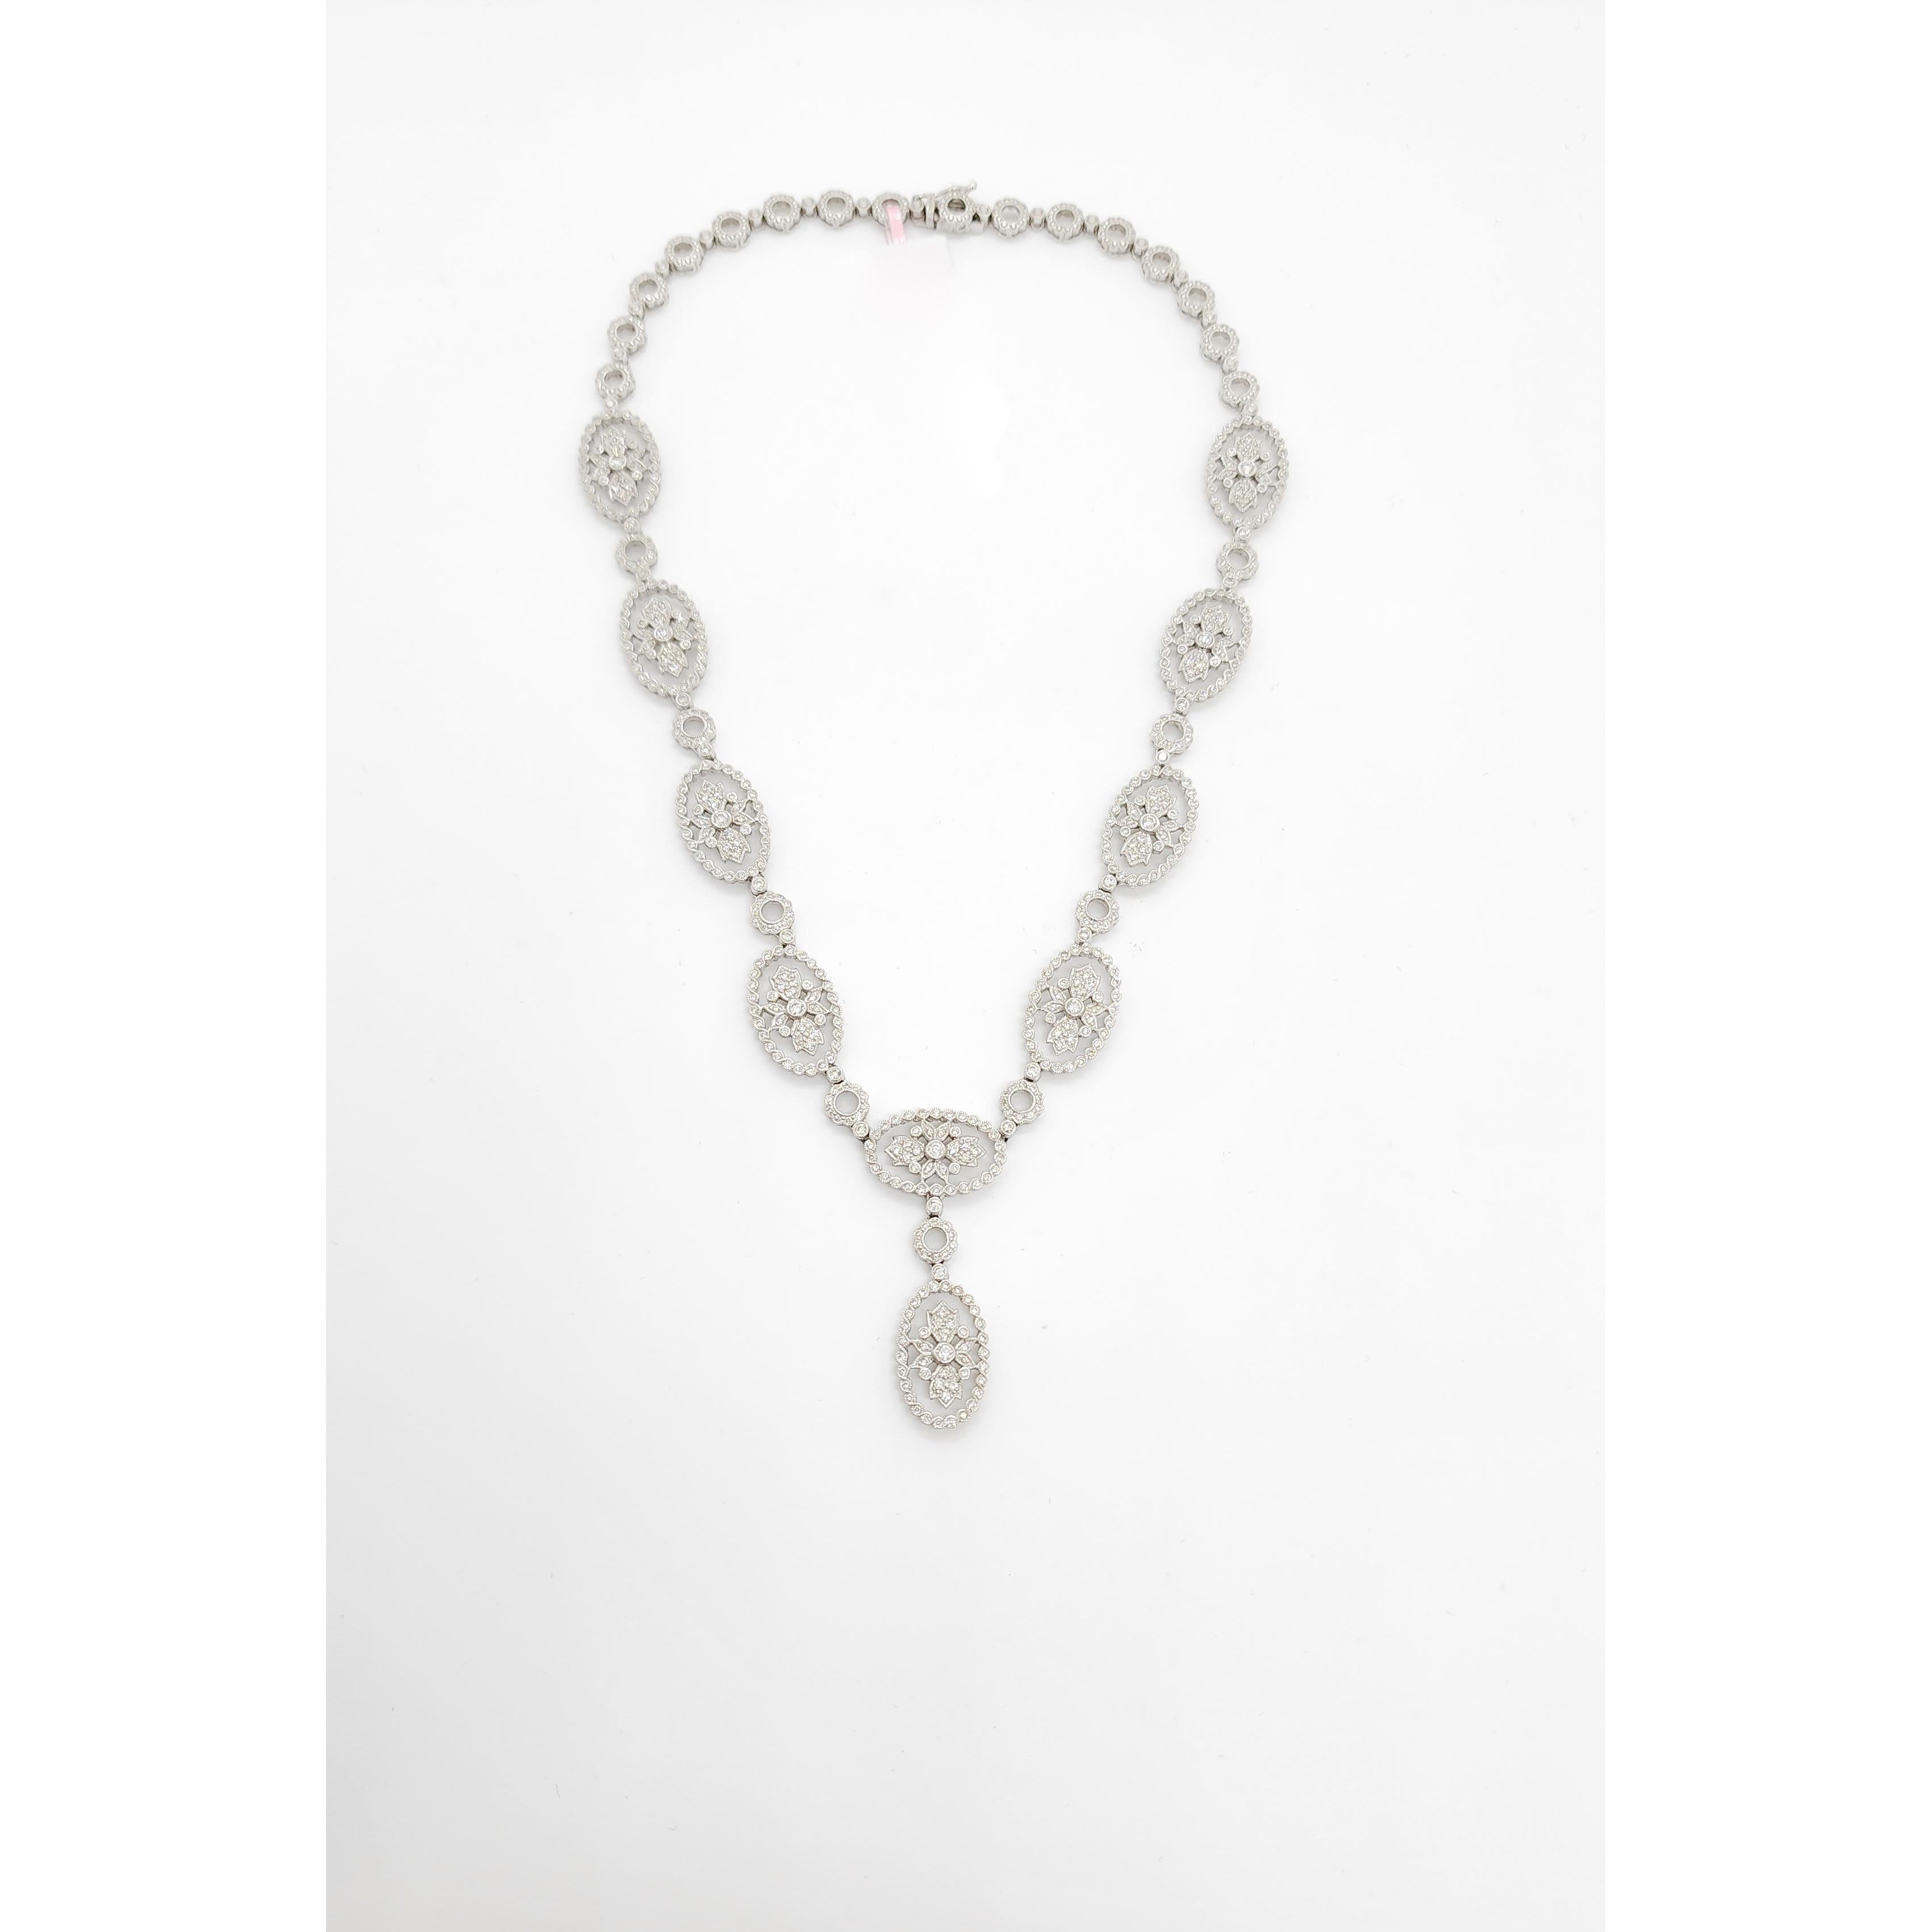 Magnifique collier avec 3,00 ct. de diamants blancs ronds de bonne qualité.  Design/One.  Fabriqué à la main en or blanc 18 carats.  La longueur est de 16,5